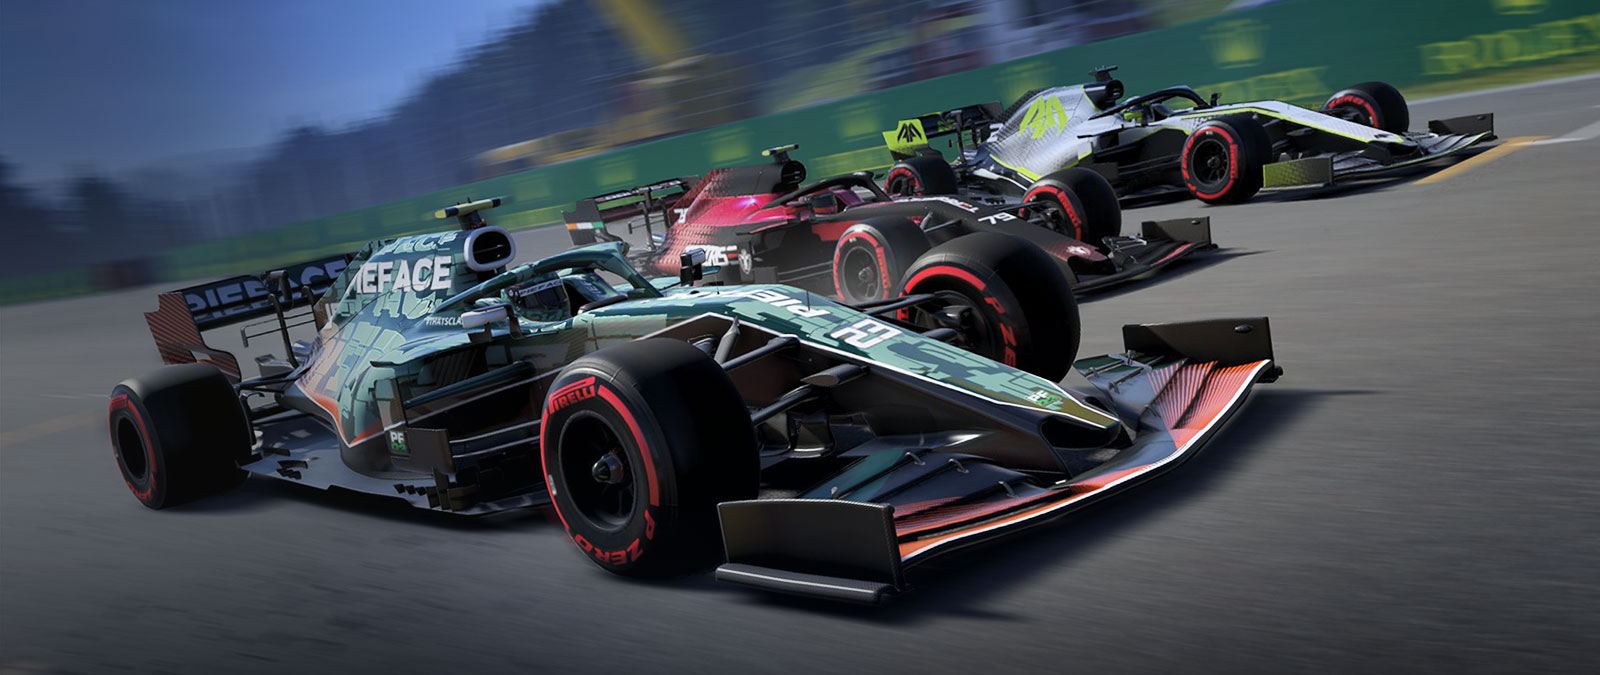 Três carros de F1 aceleram lado a lado na pista.